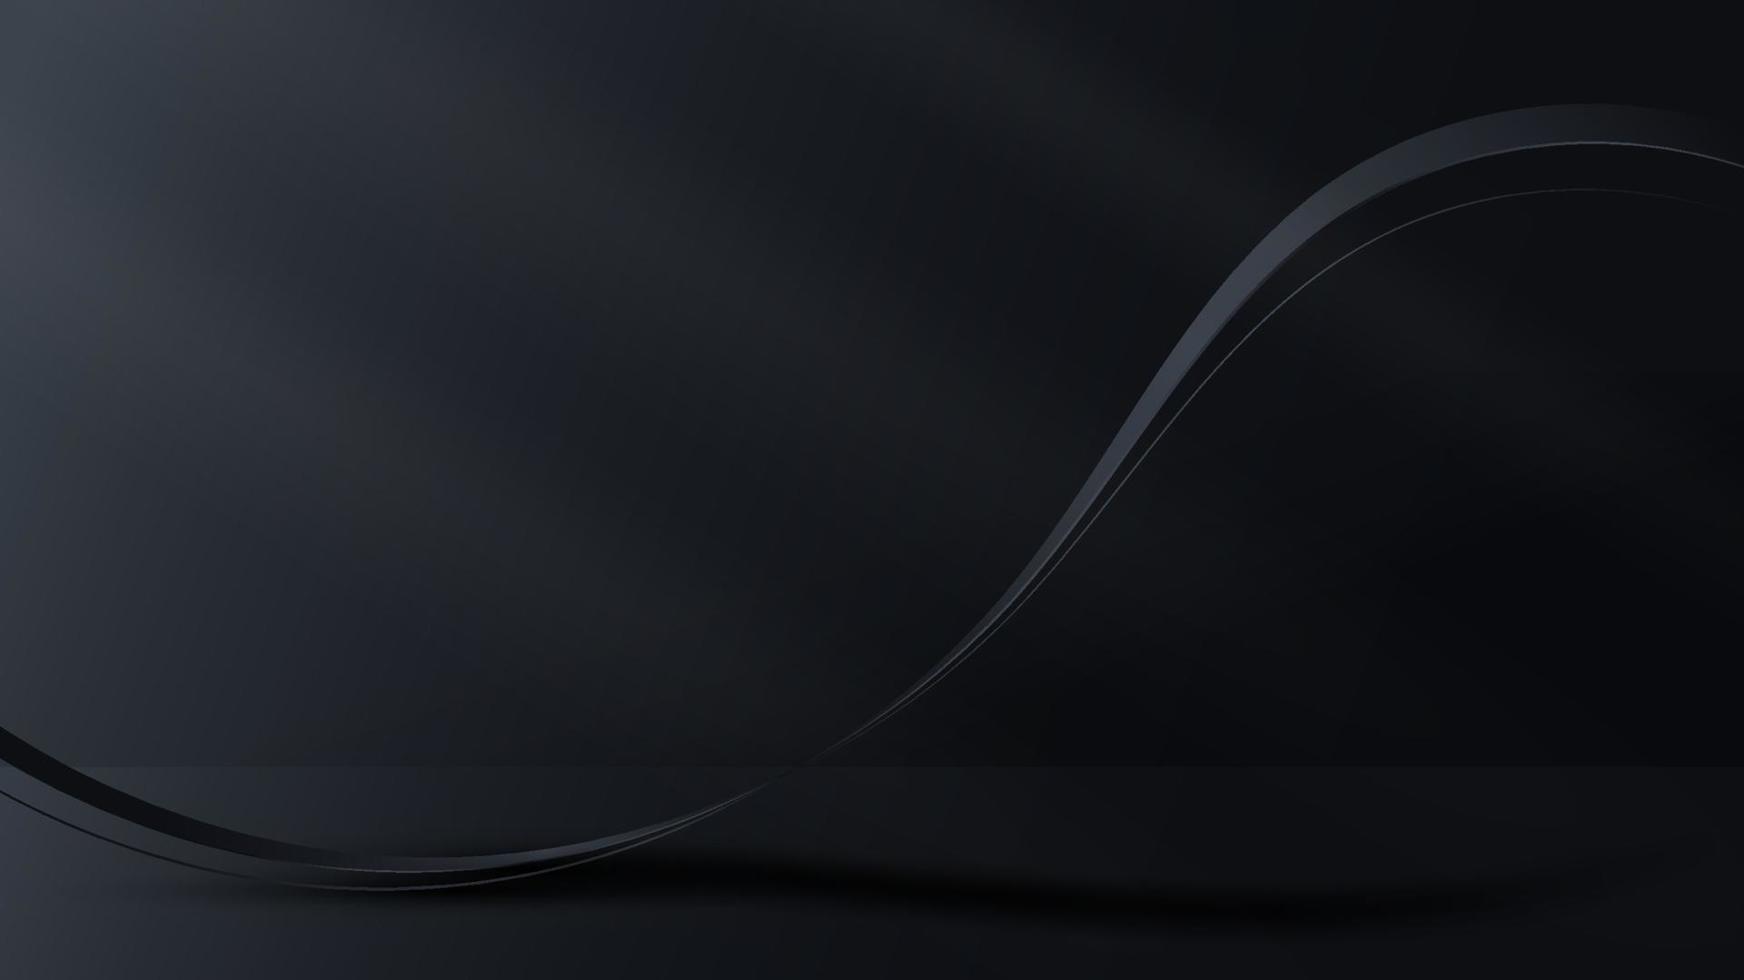 L'onda del nastro nero realistico 3d allinea gli elementi sullo stile di lusso del fondo della stanza buia vettore